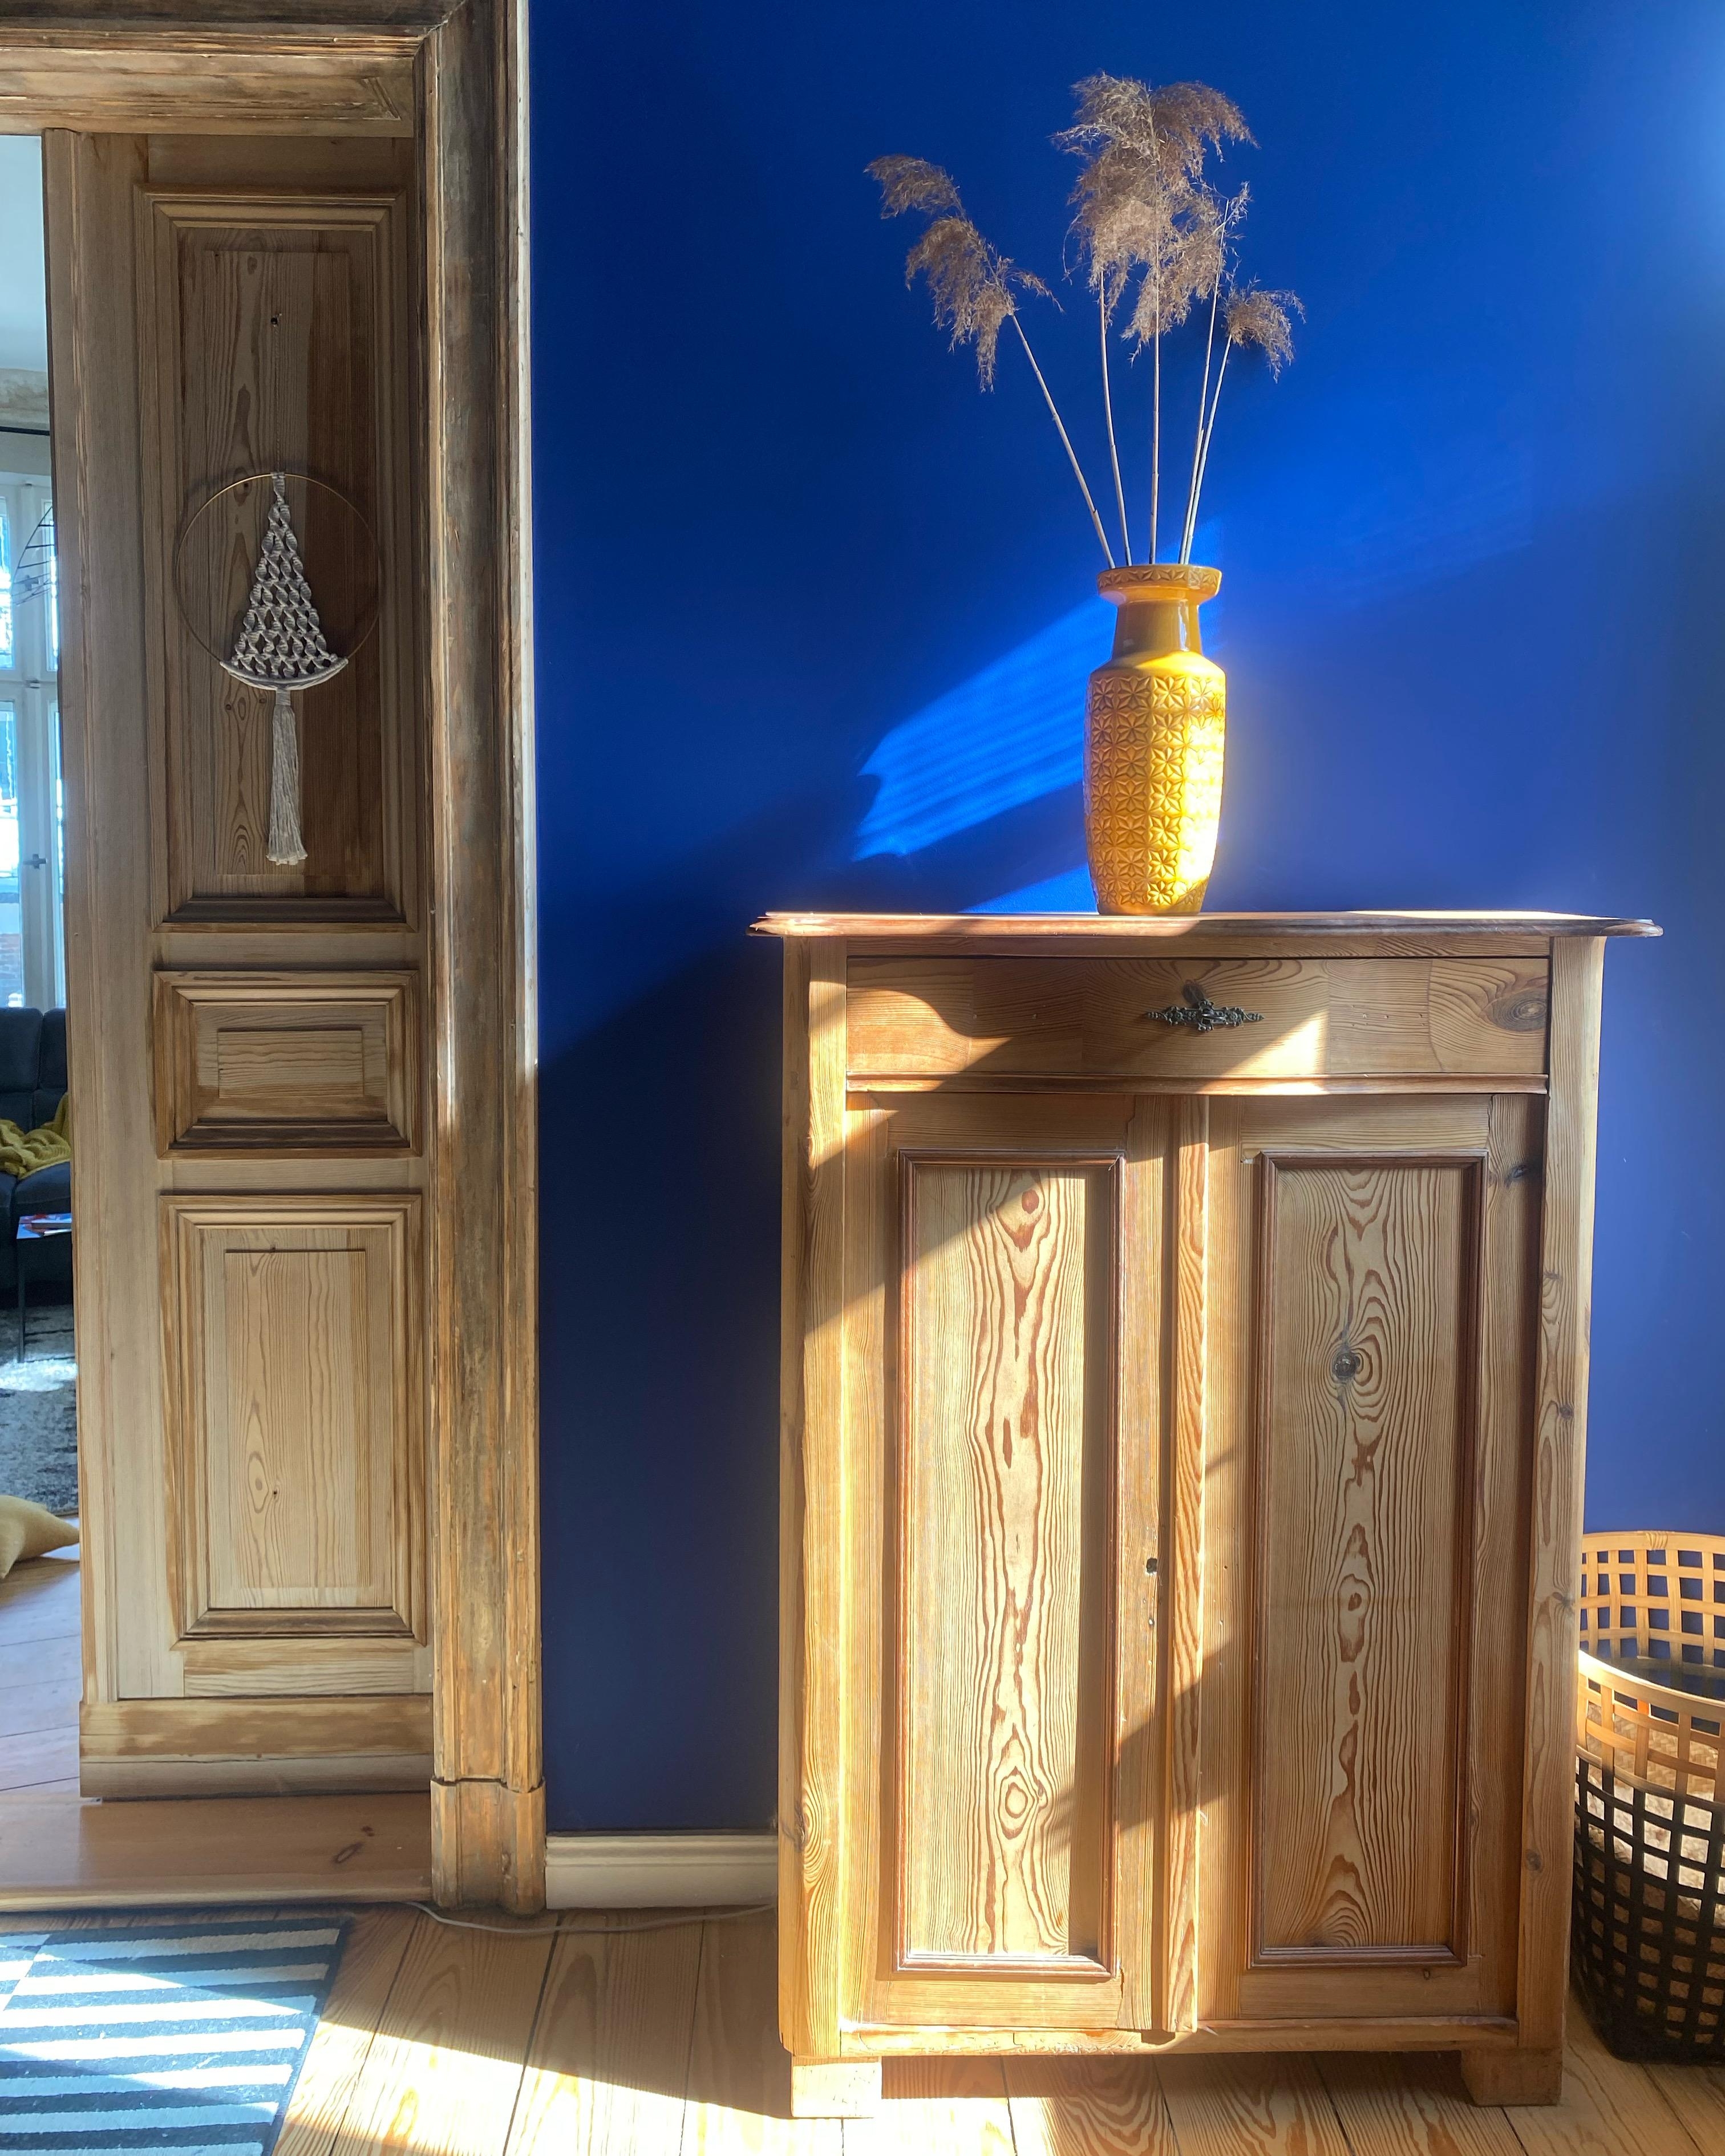 Sonne im blauen Salon ☀️💙 #cozyhome #farbenfroh #altbauliebe